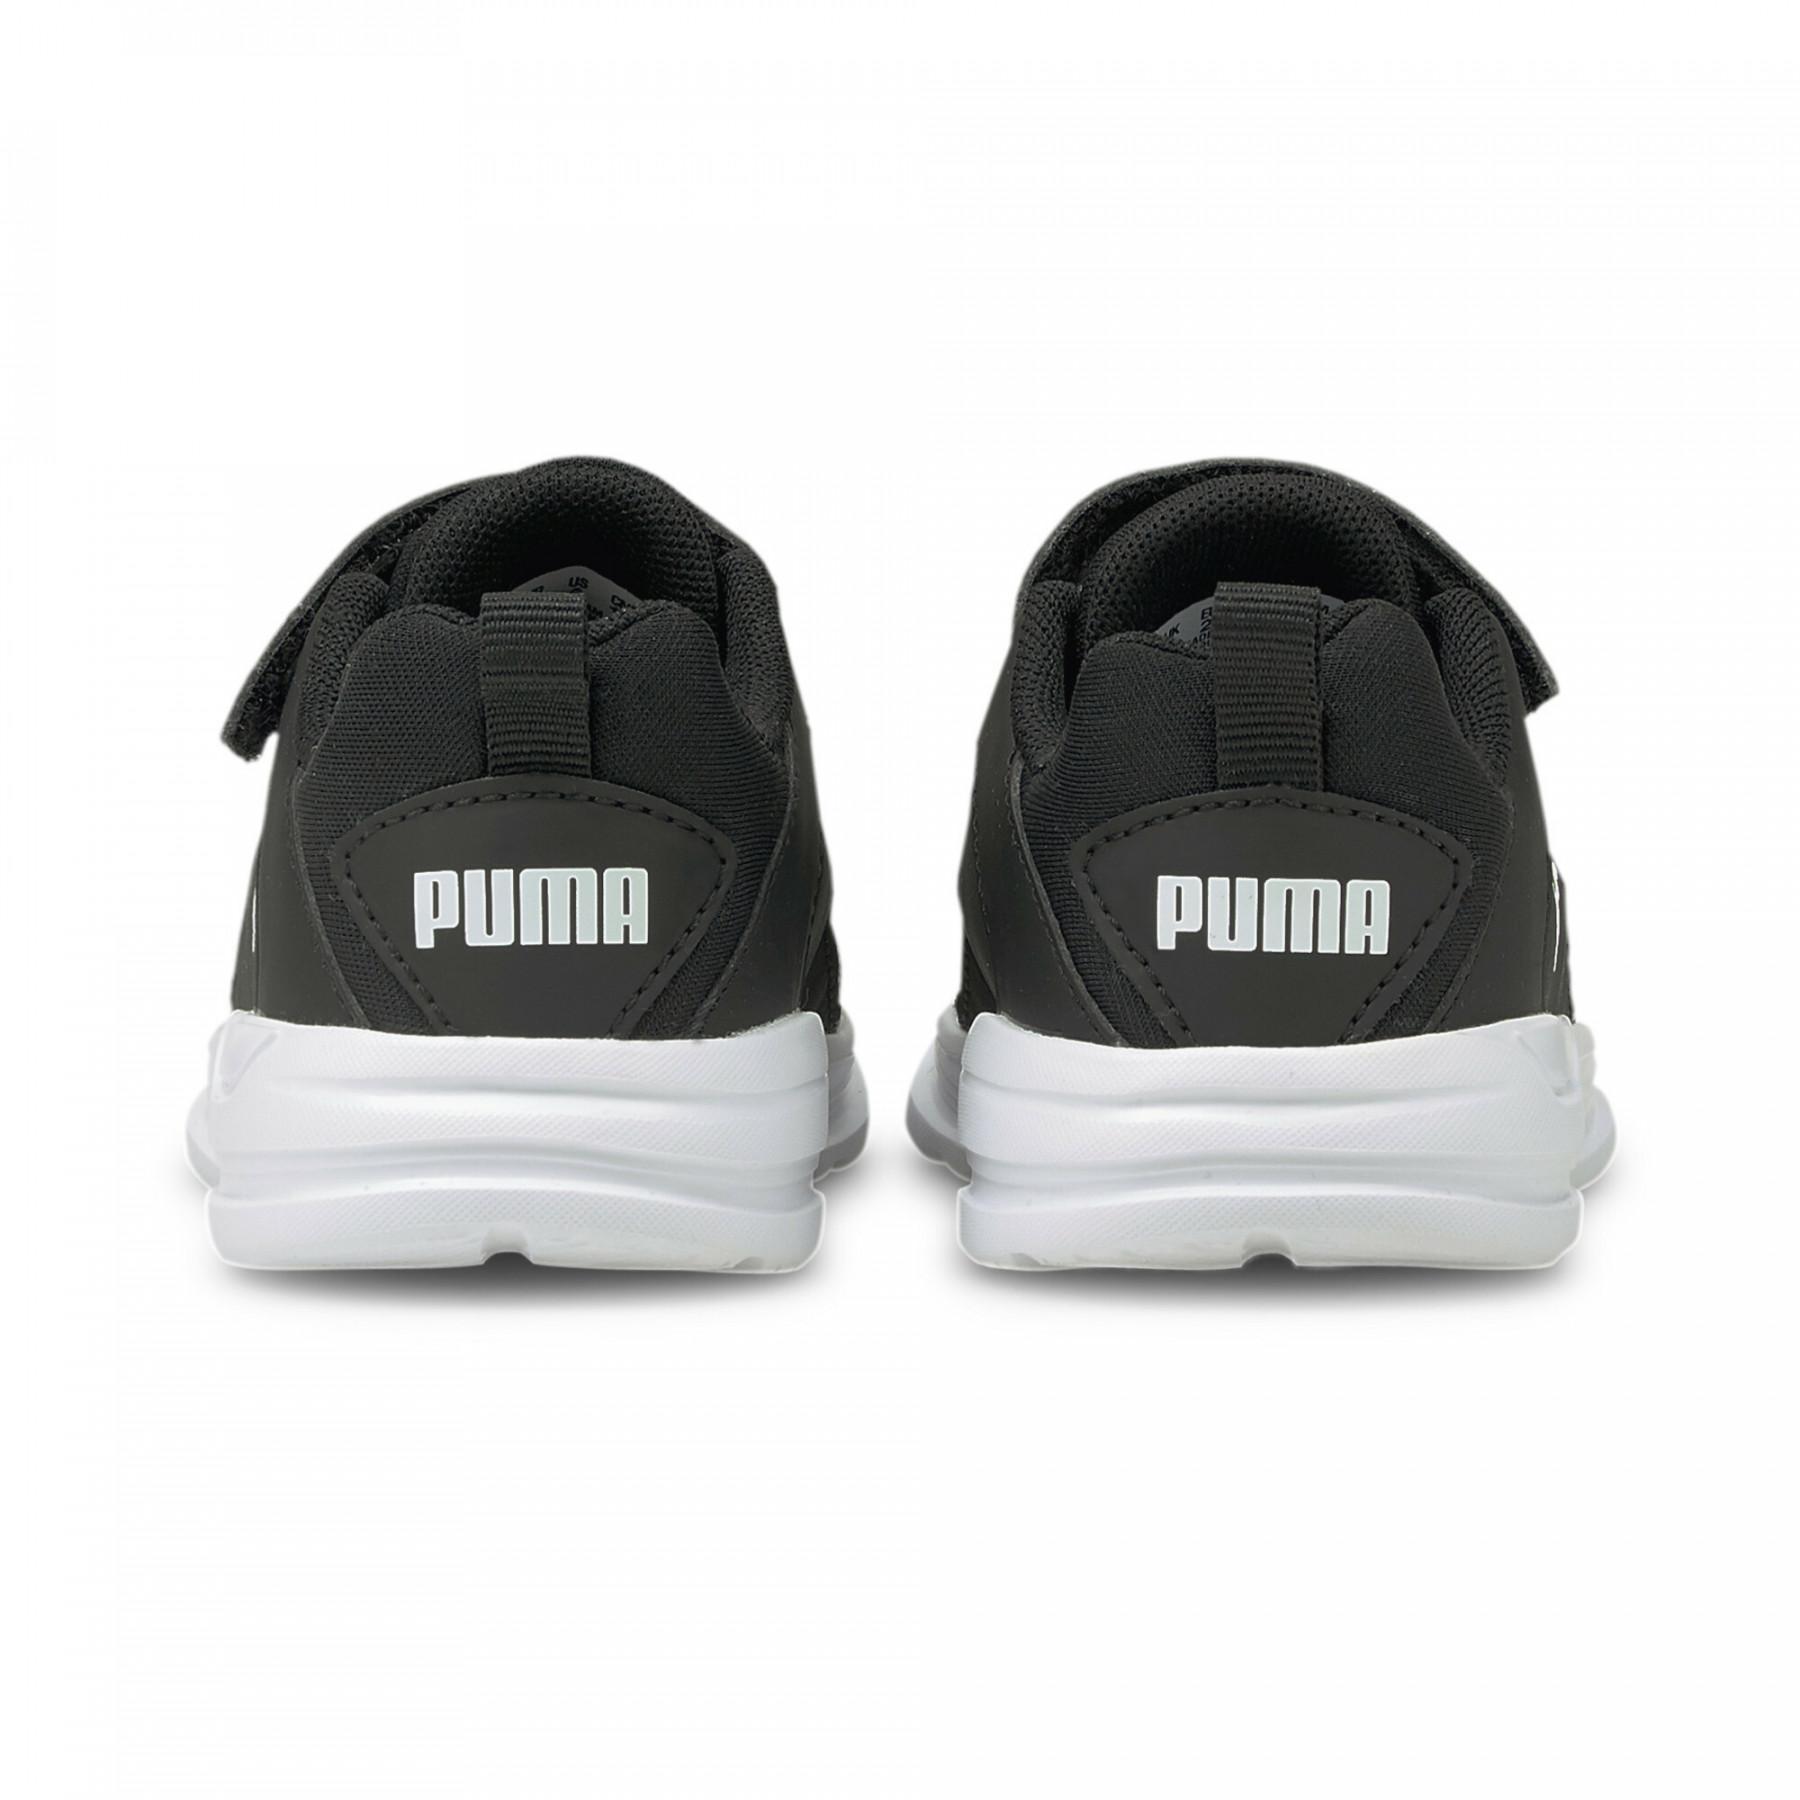 Schuhe Puma Comet 2 Alt V Inf